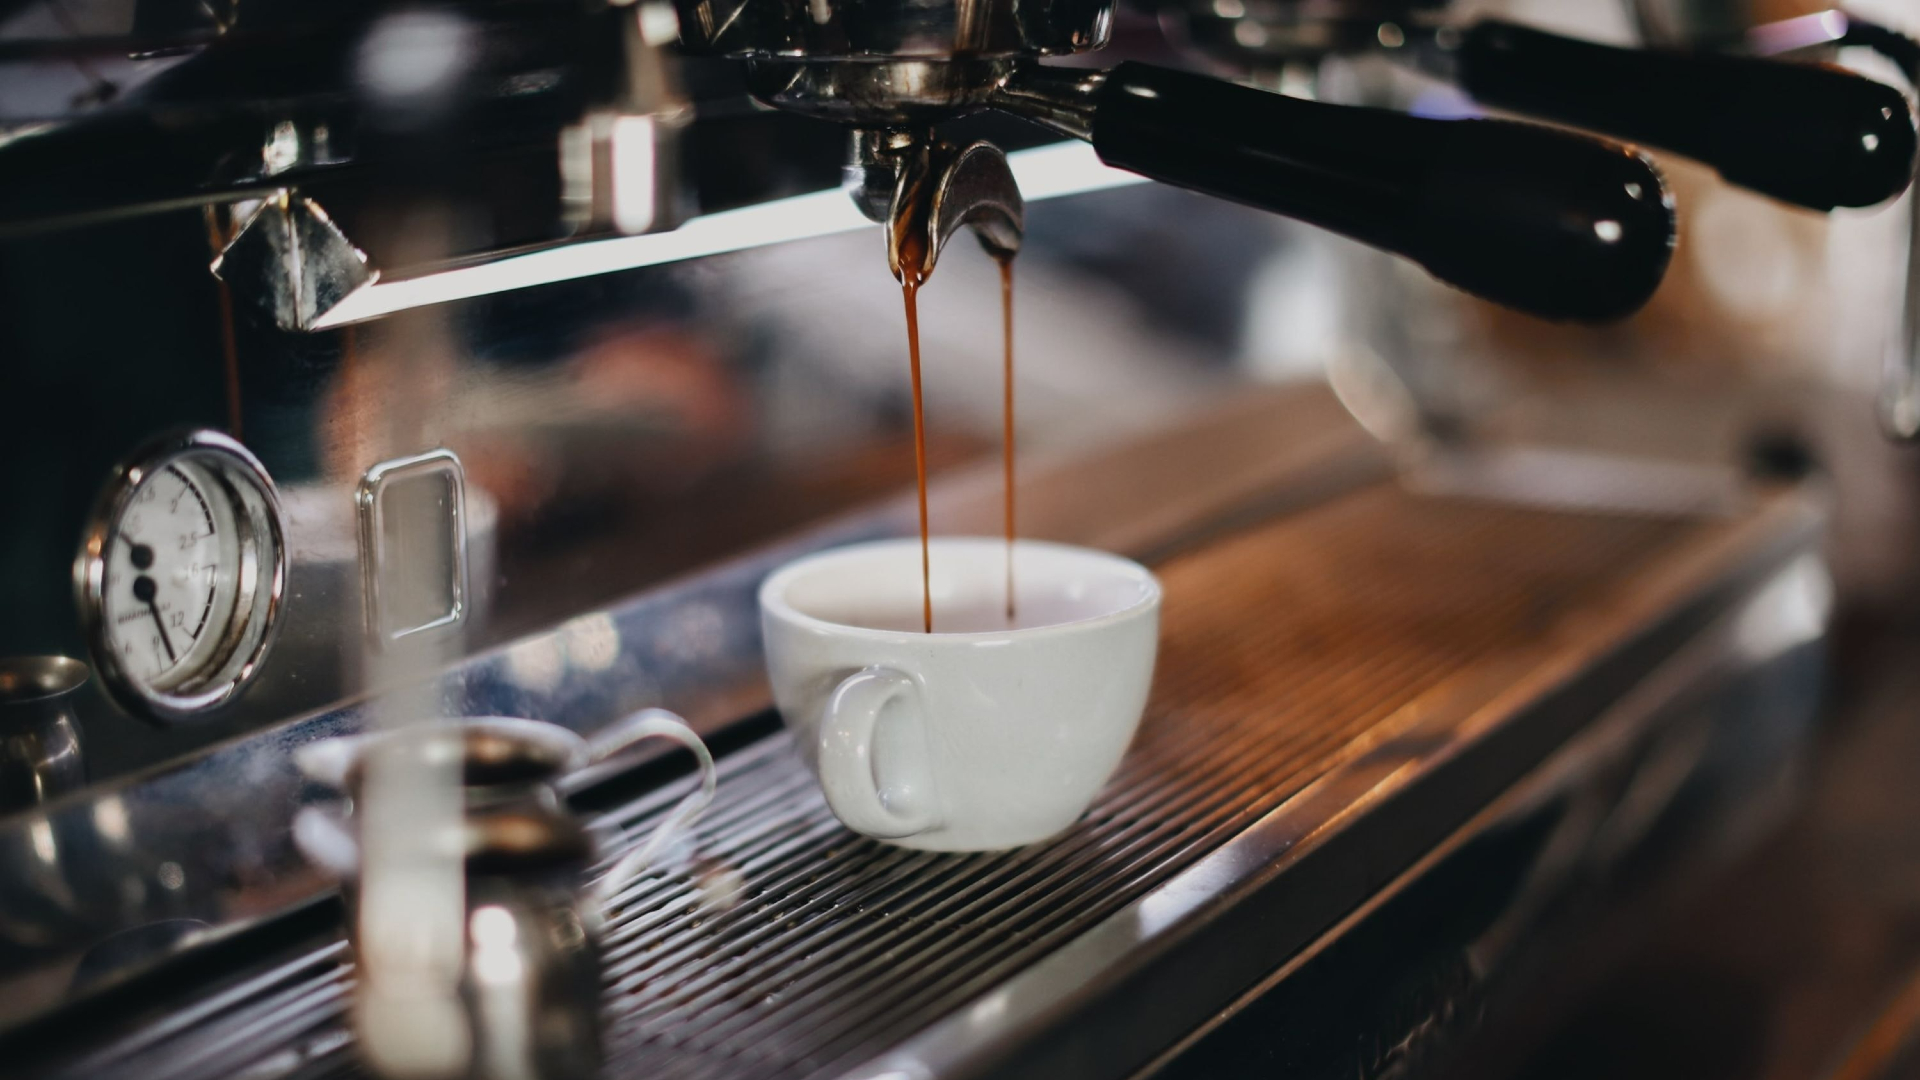 Vervreemding Sovjet trui Lidl stunt met espressomachines waar écht lekkere koffie uitkomt